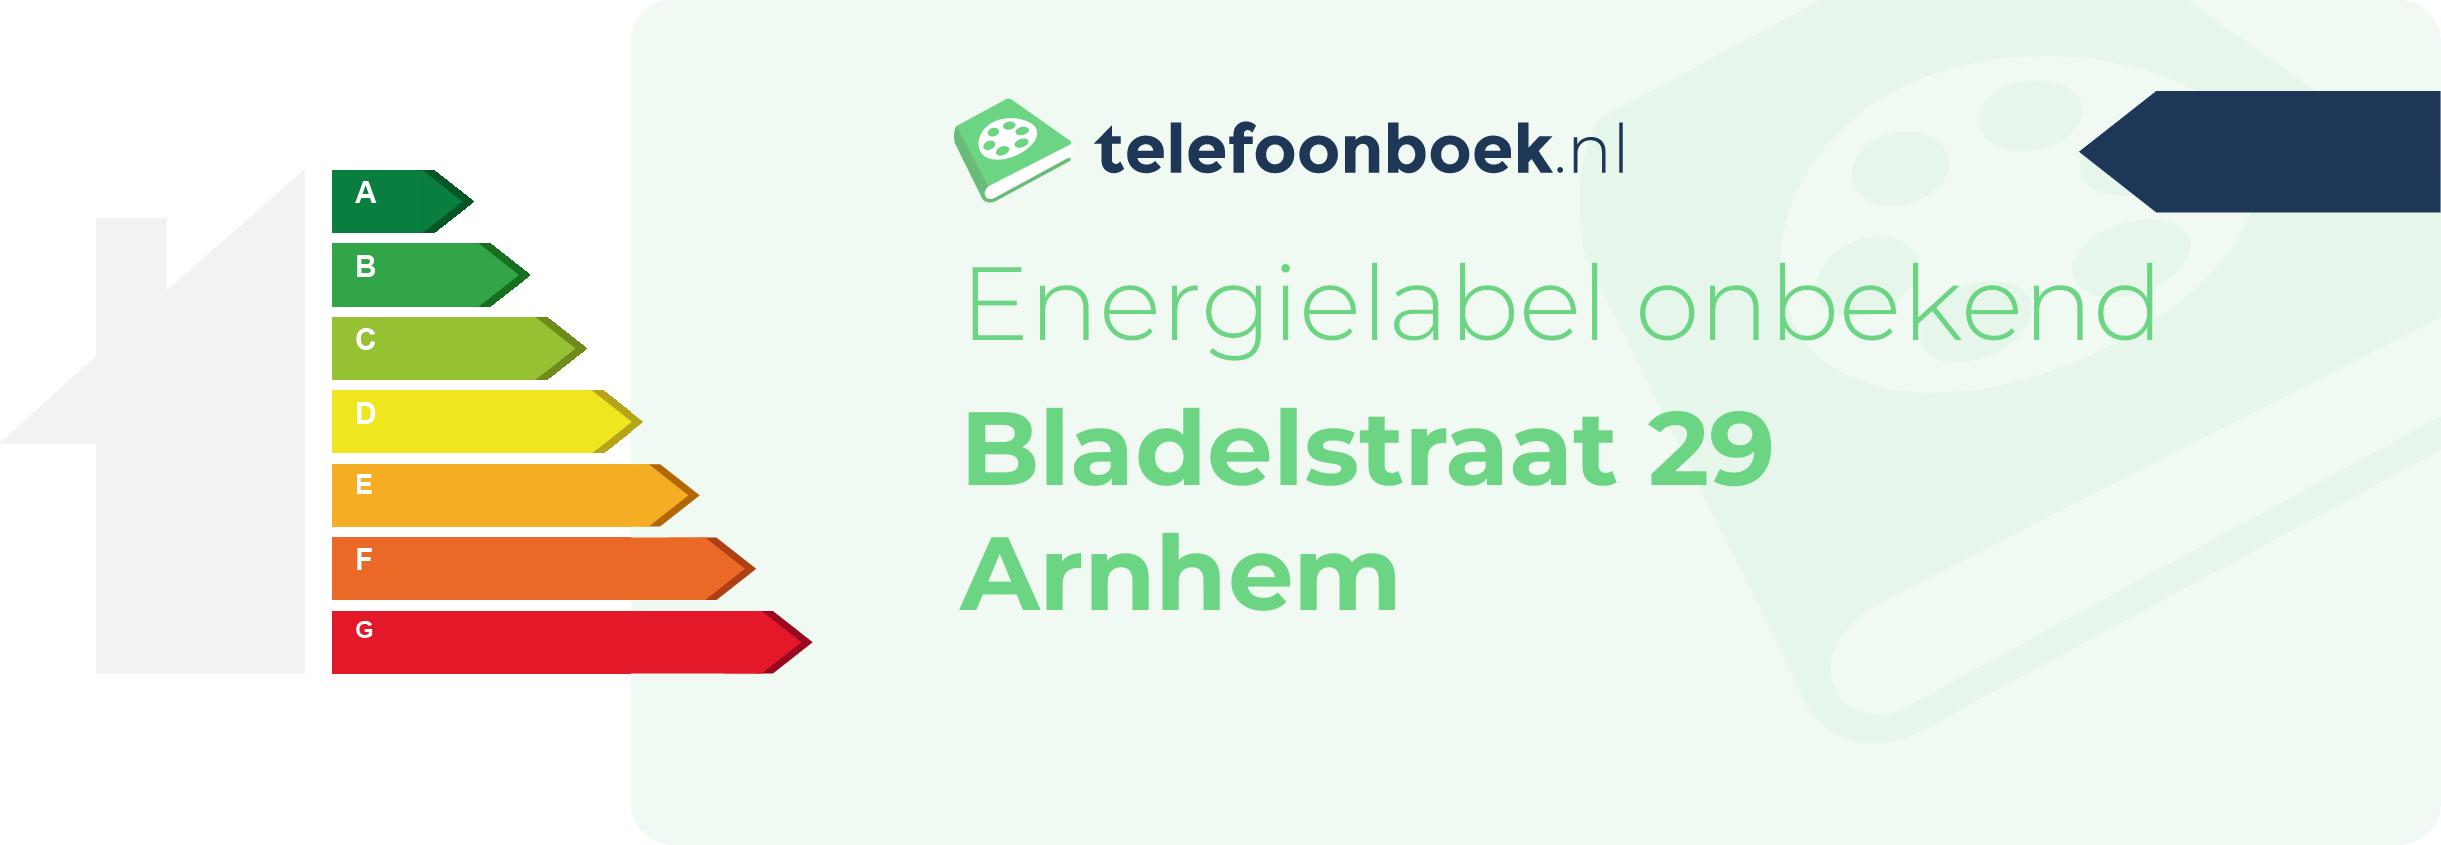 Energielabel Bladelstraat 29 Arnhem